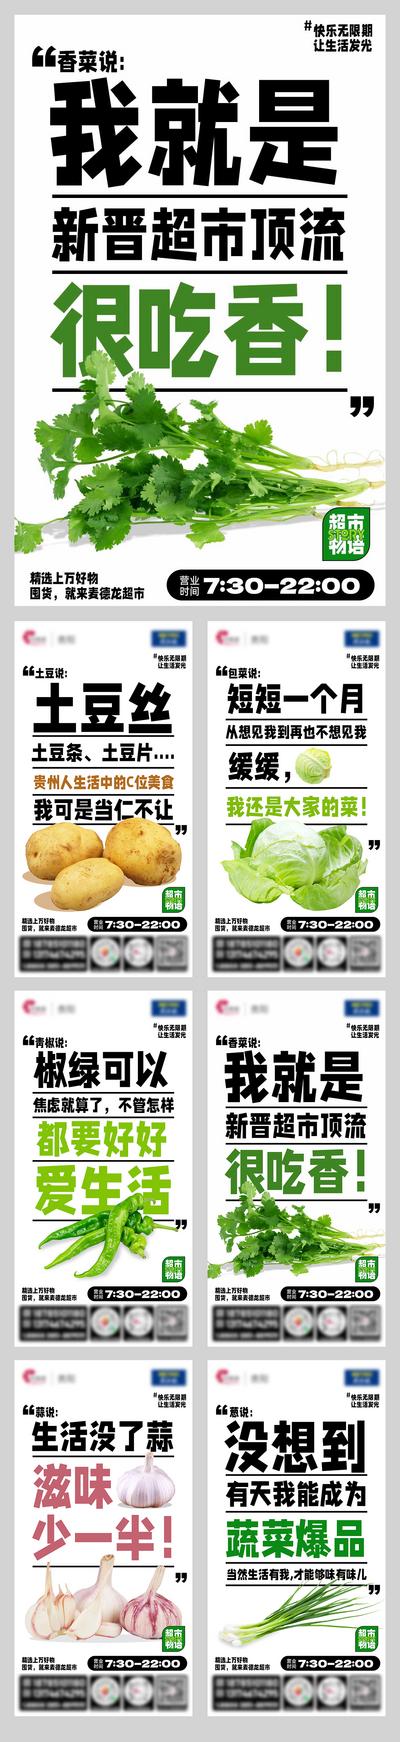 南门网 海报 生鲜 蔬菜 超市 简约 文字 创意